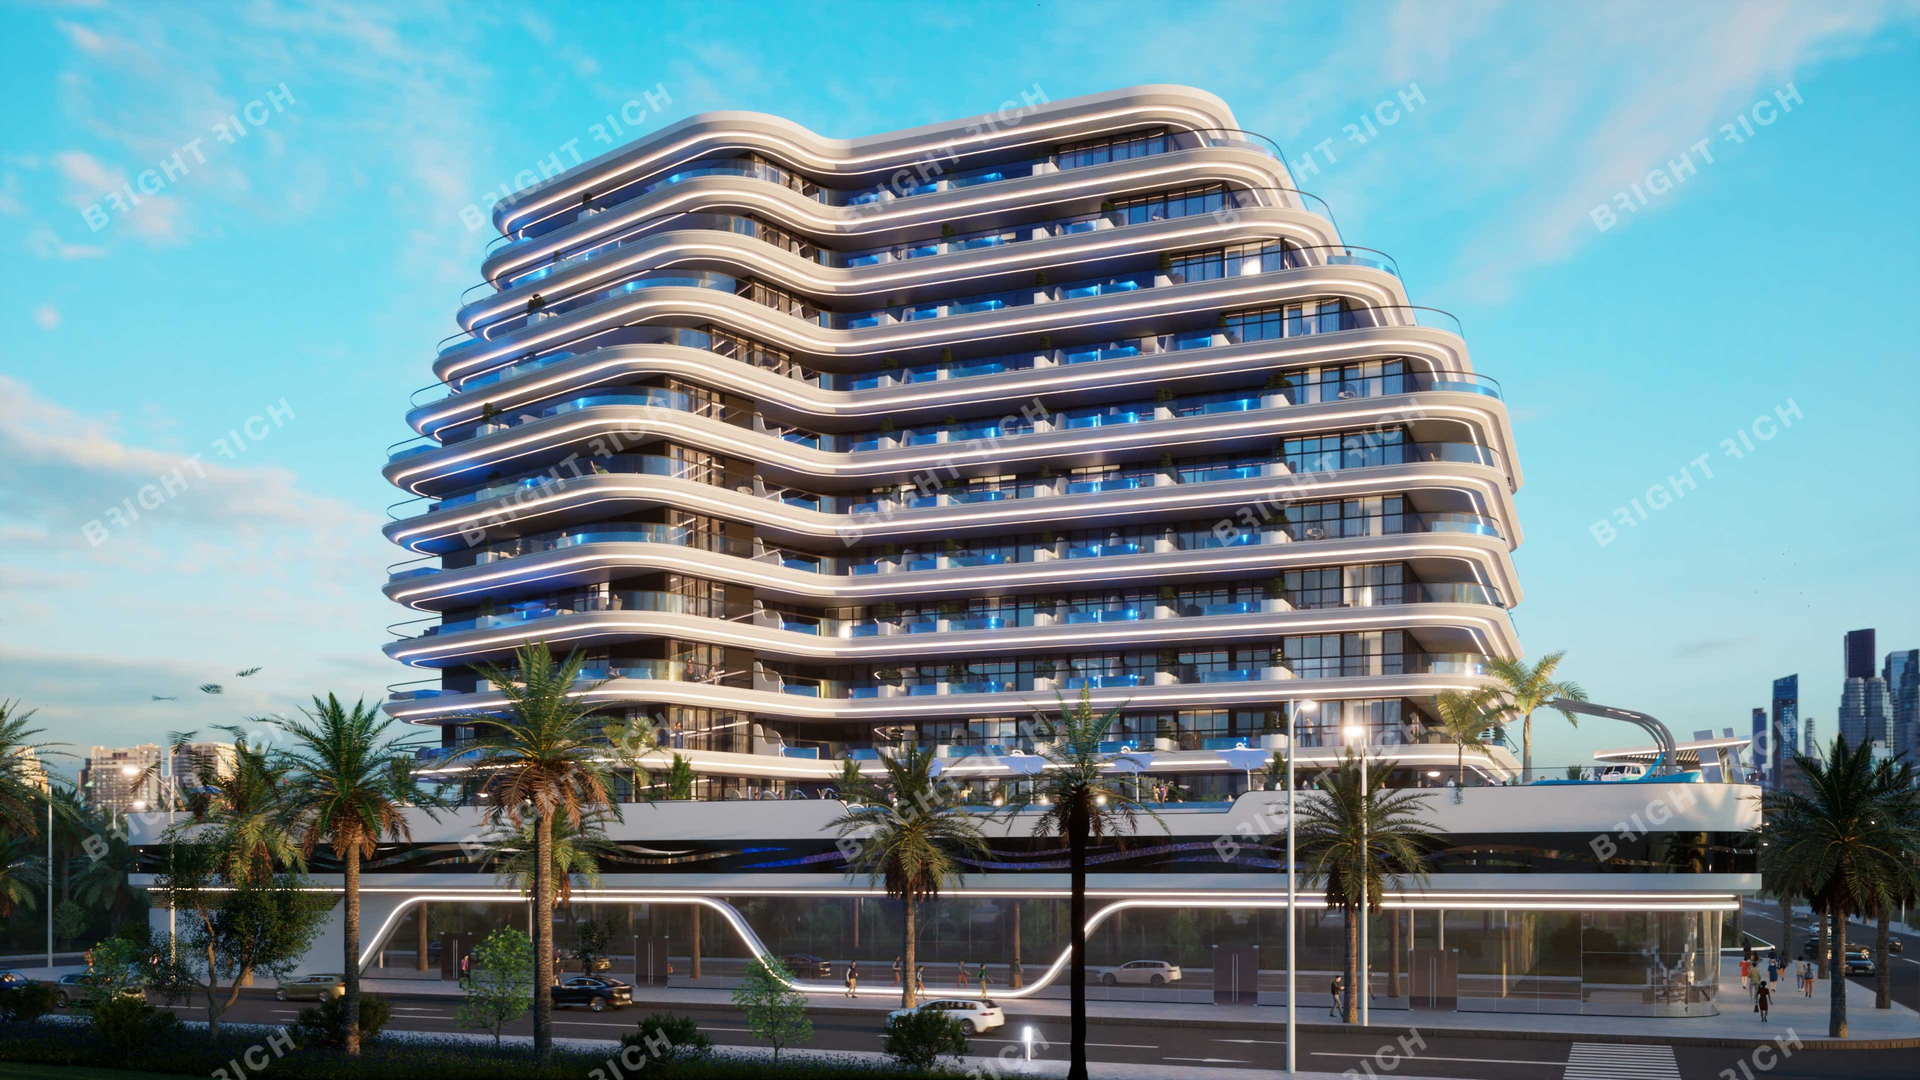 Samana Portofino, apart complex in Dubai - 20